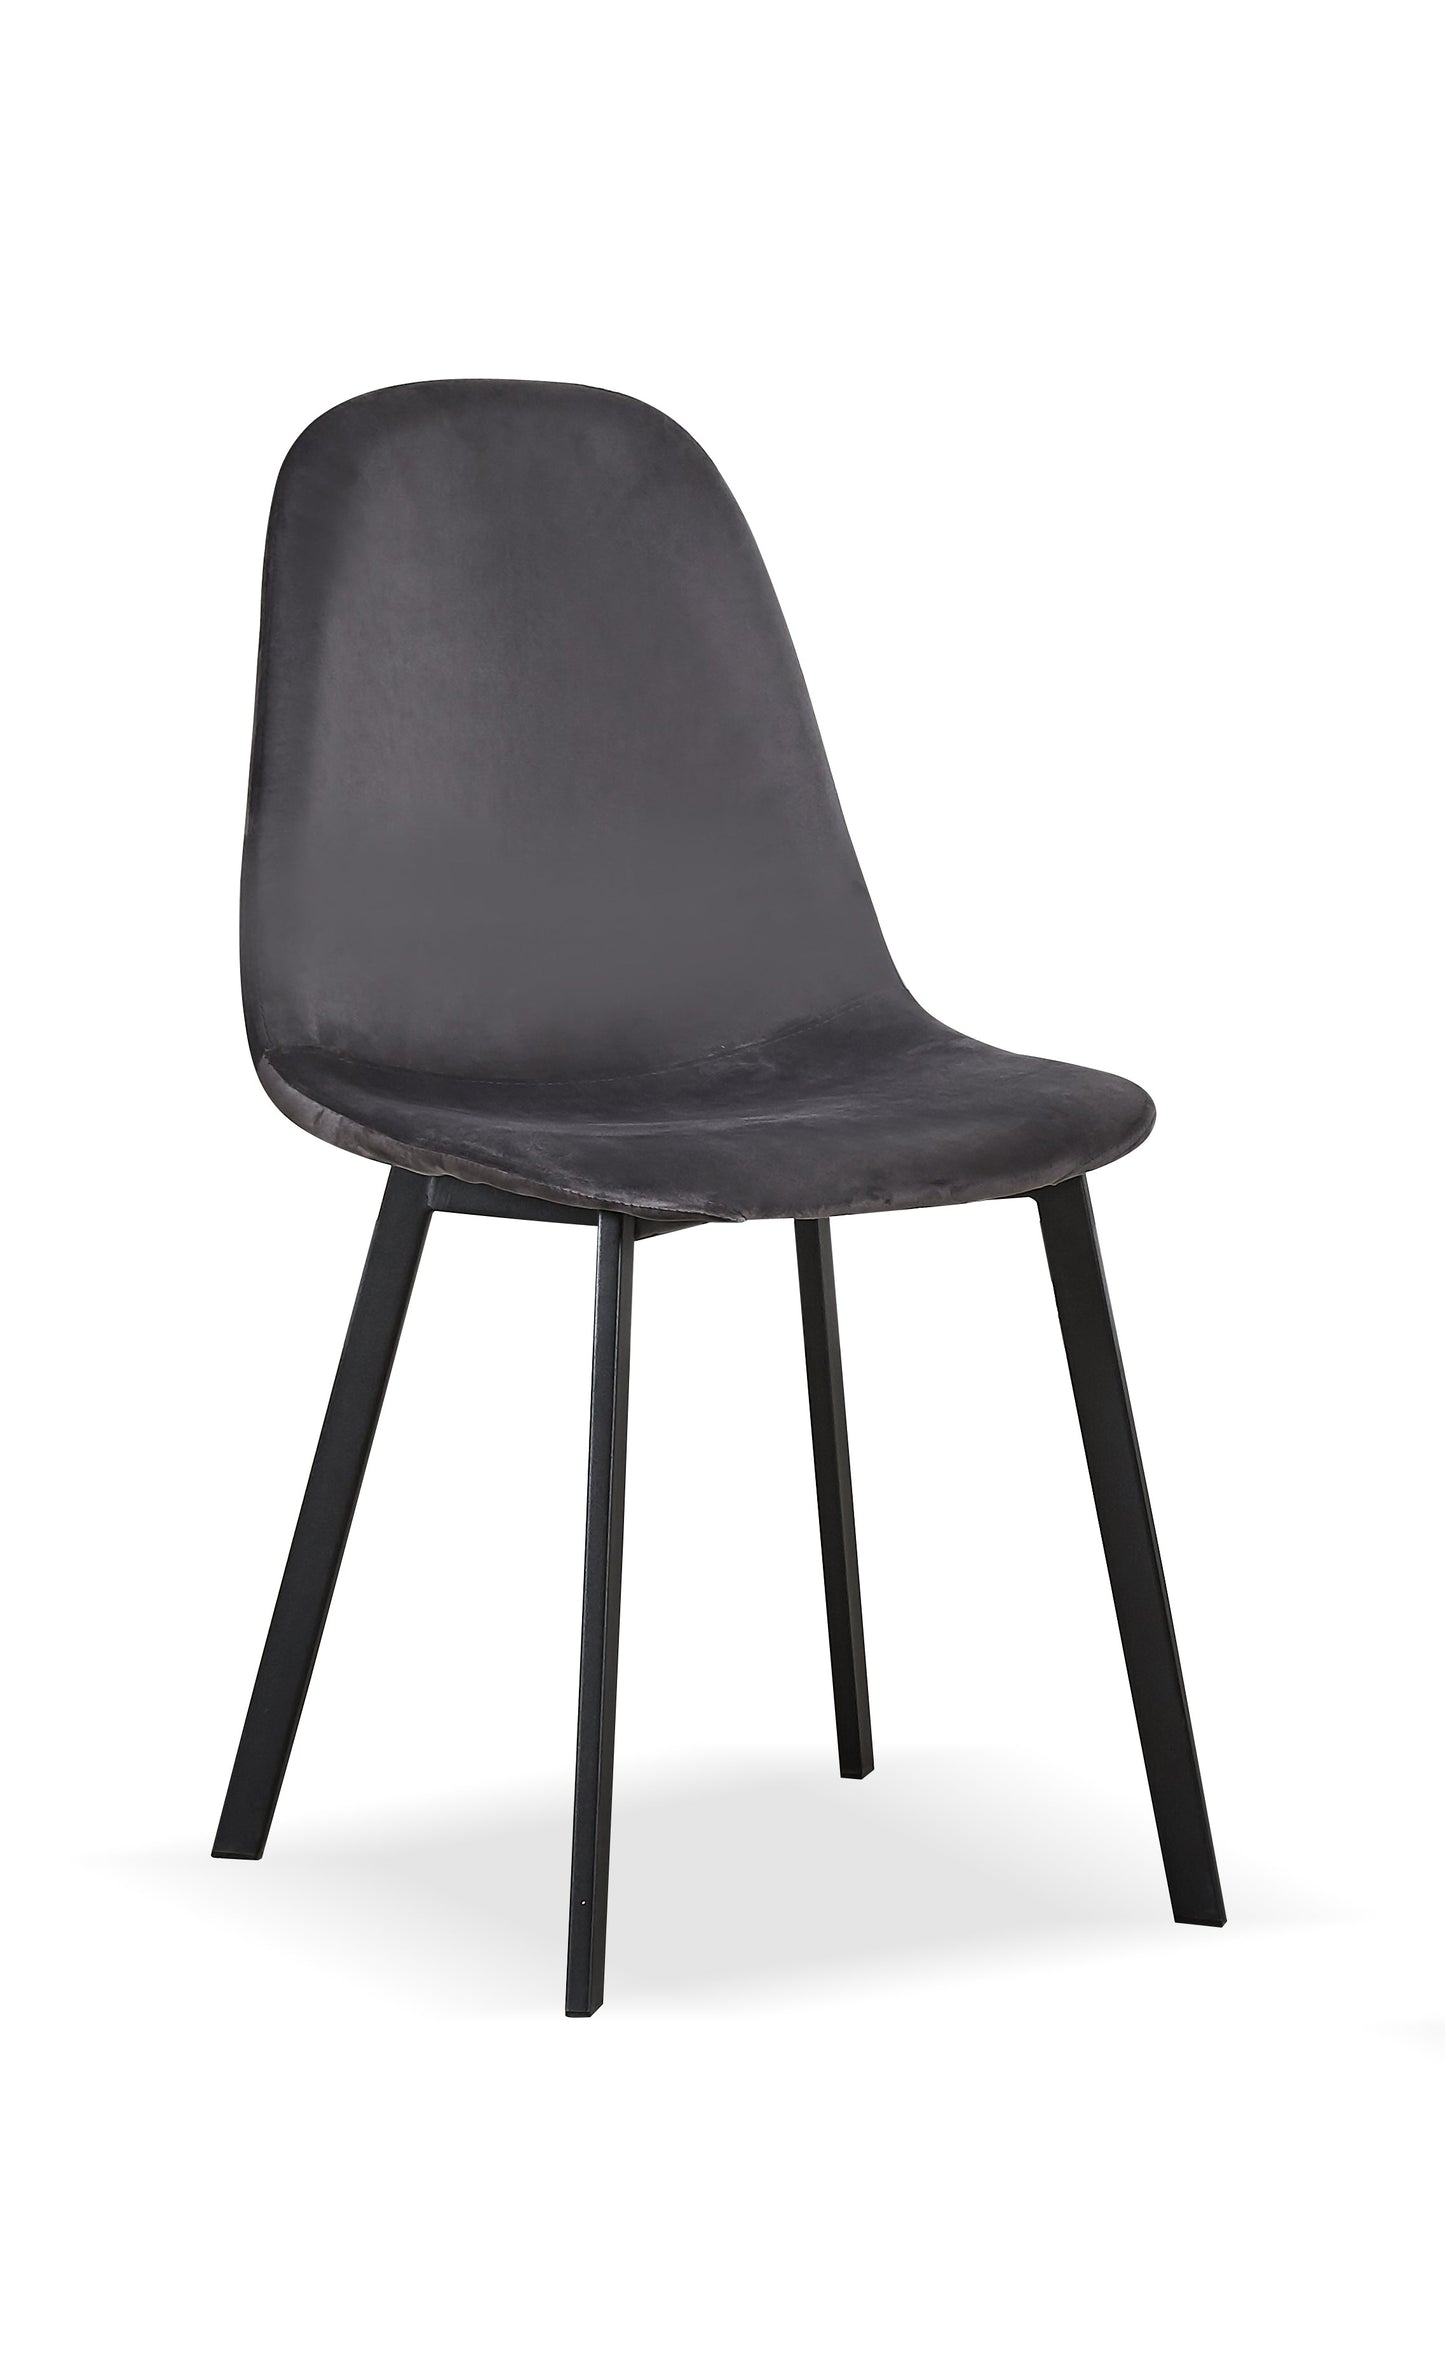 Eldan Dining Chair - Grey/Black